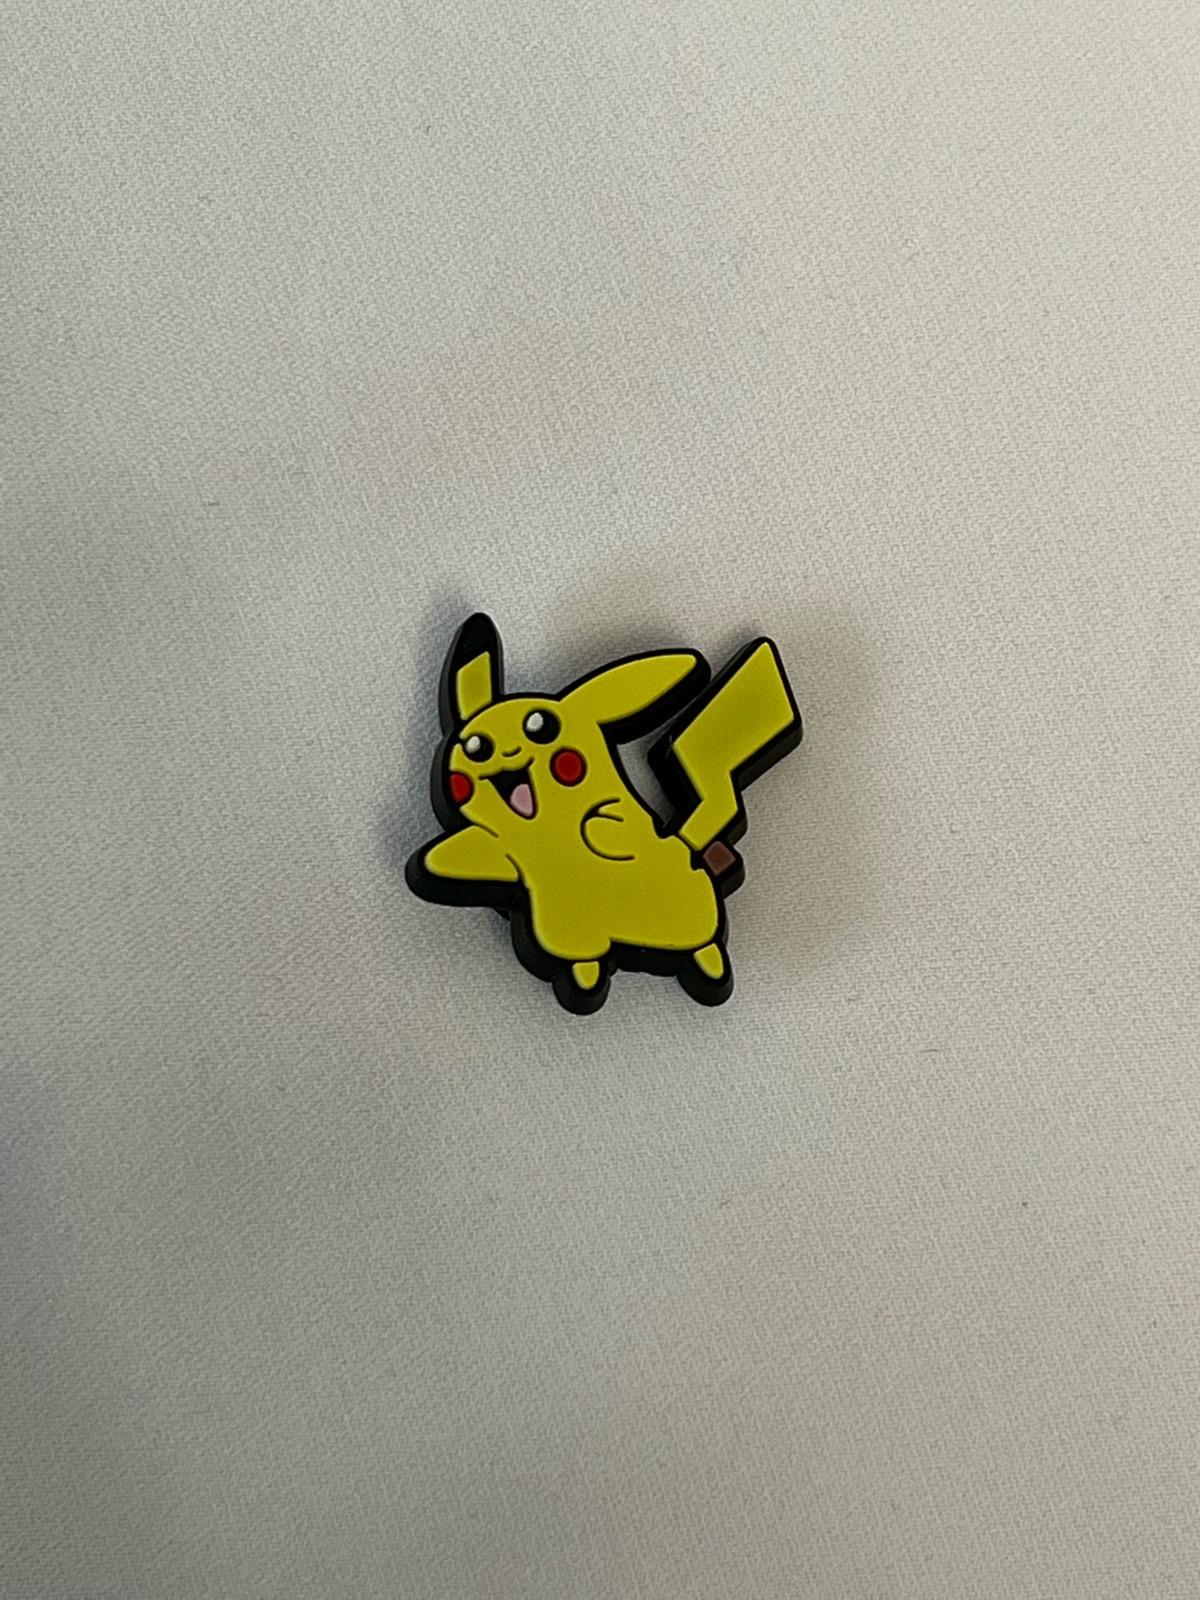 Pokemon Pikachu Crocs Pin Model 3 